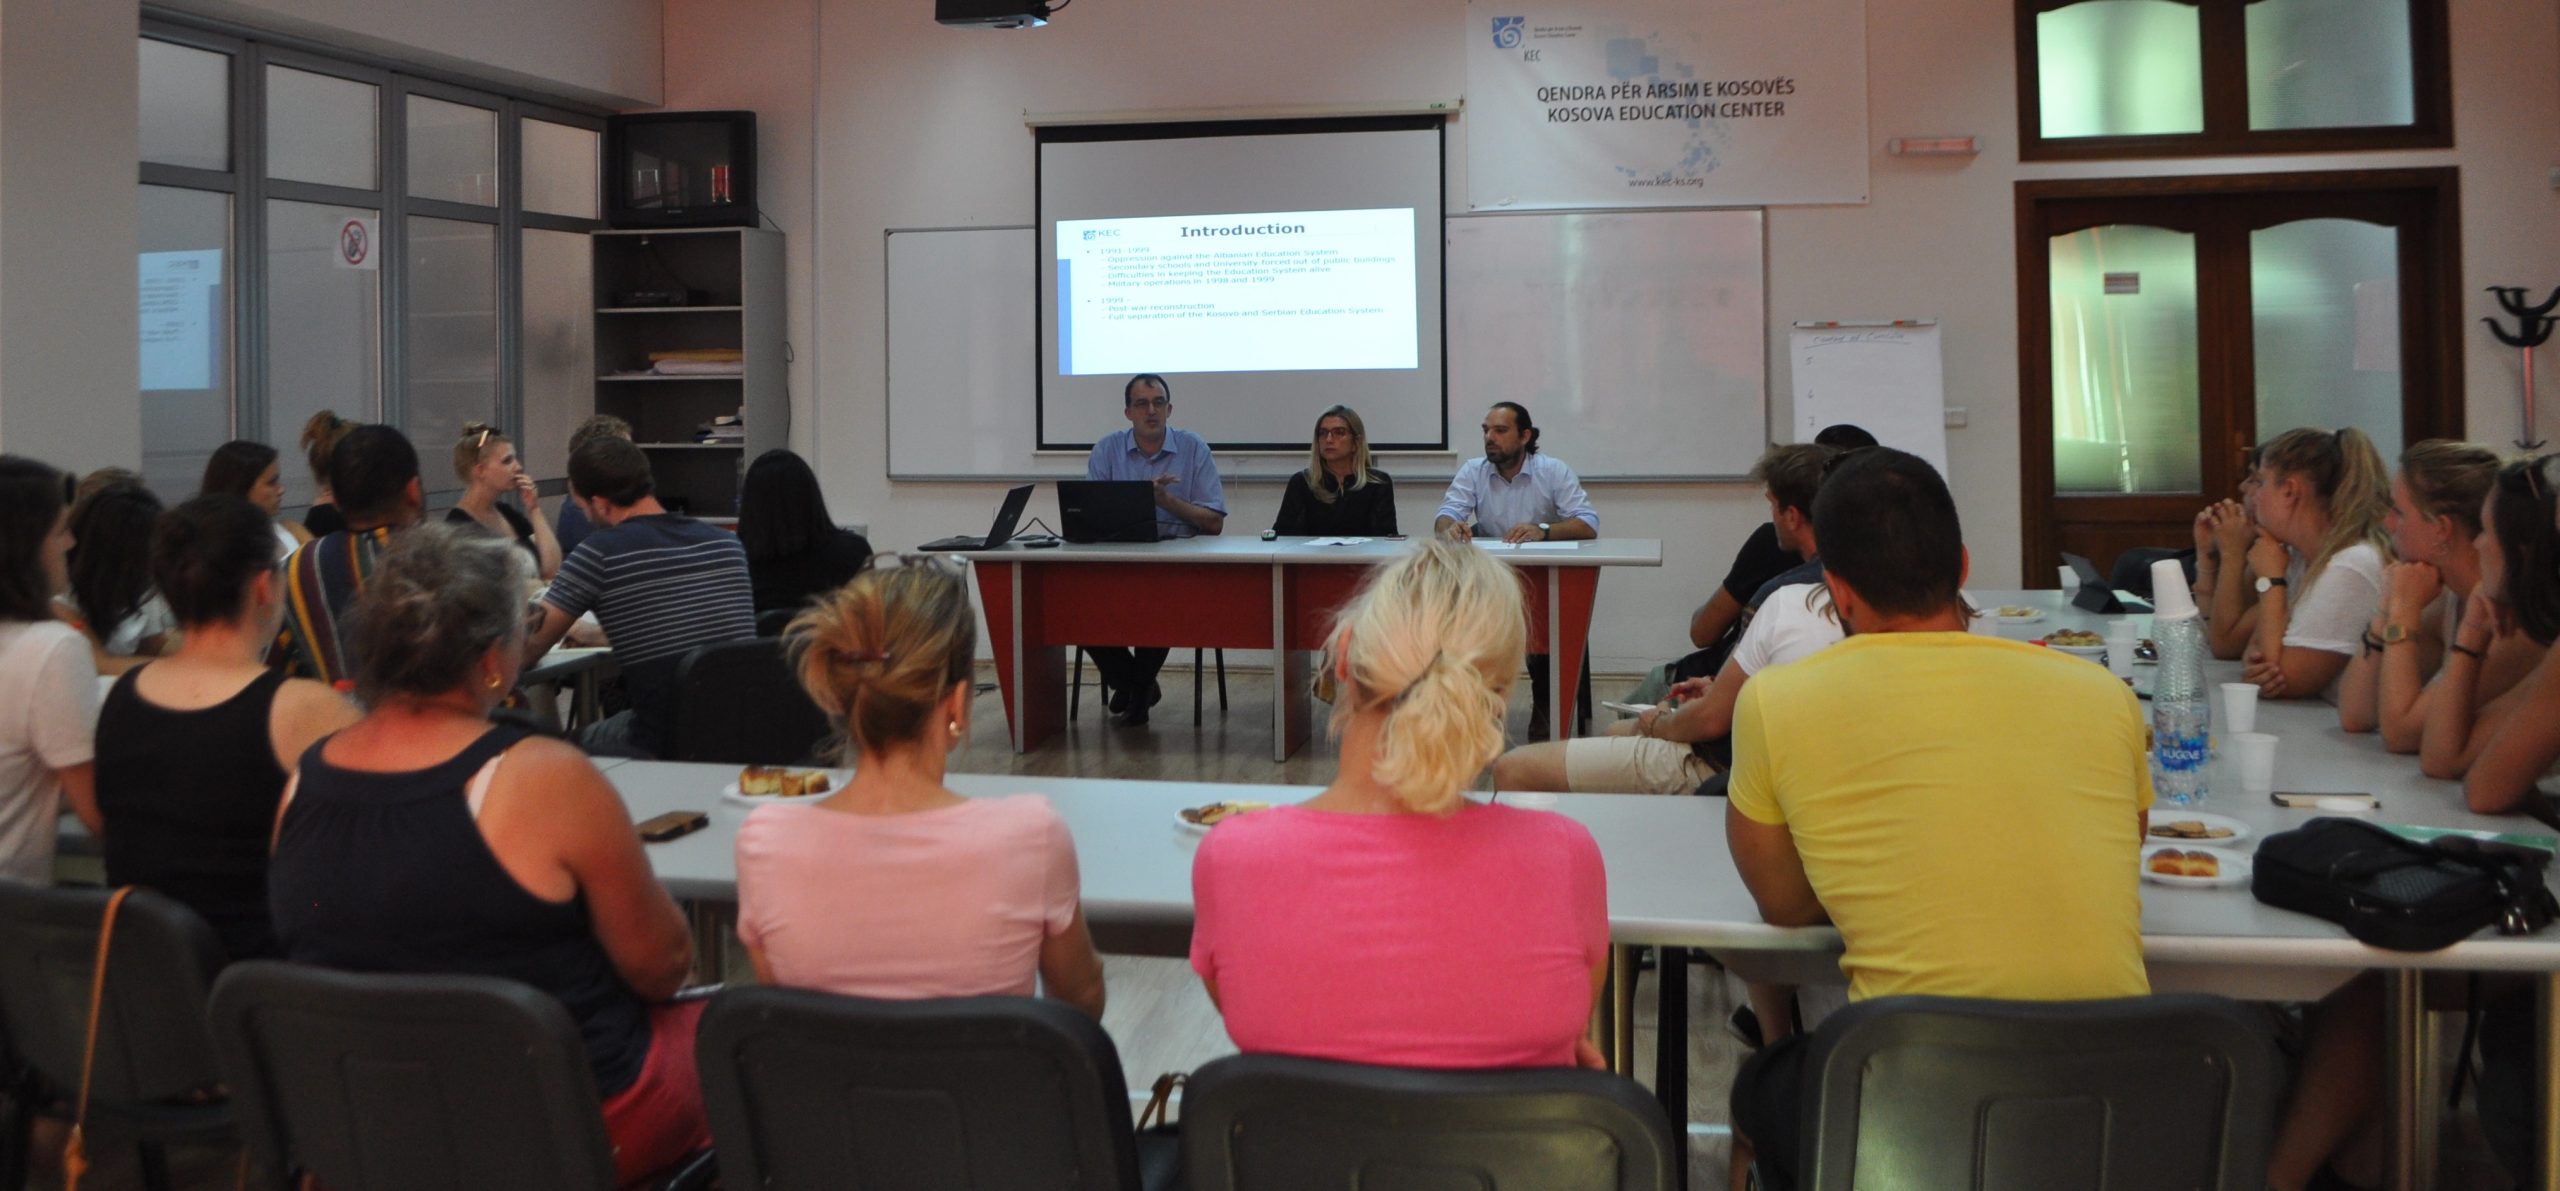 Vizita e studentëve dhe profesorëve nga Universiteti i Cyrihut për përgatitjen e mësuesve PHZH (Pädagogische Hochschule), në Qendrën për Arsim të Kosovës